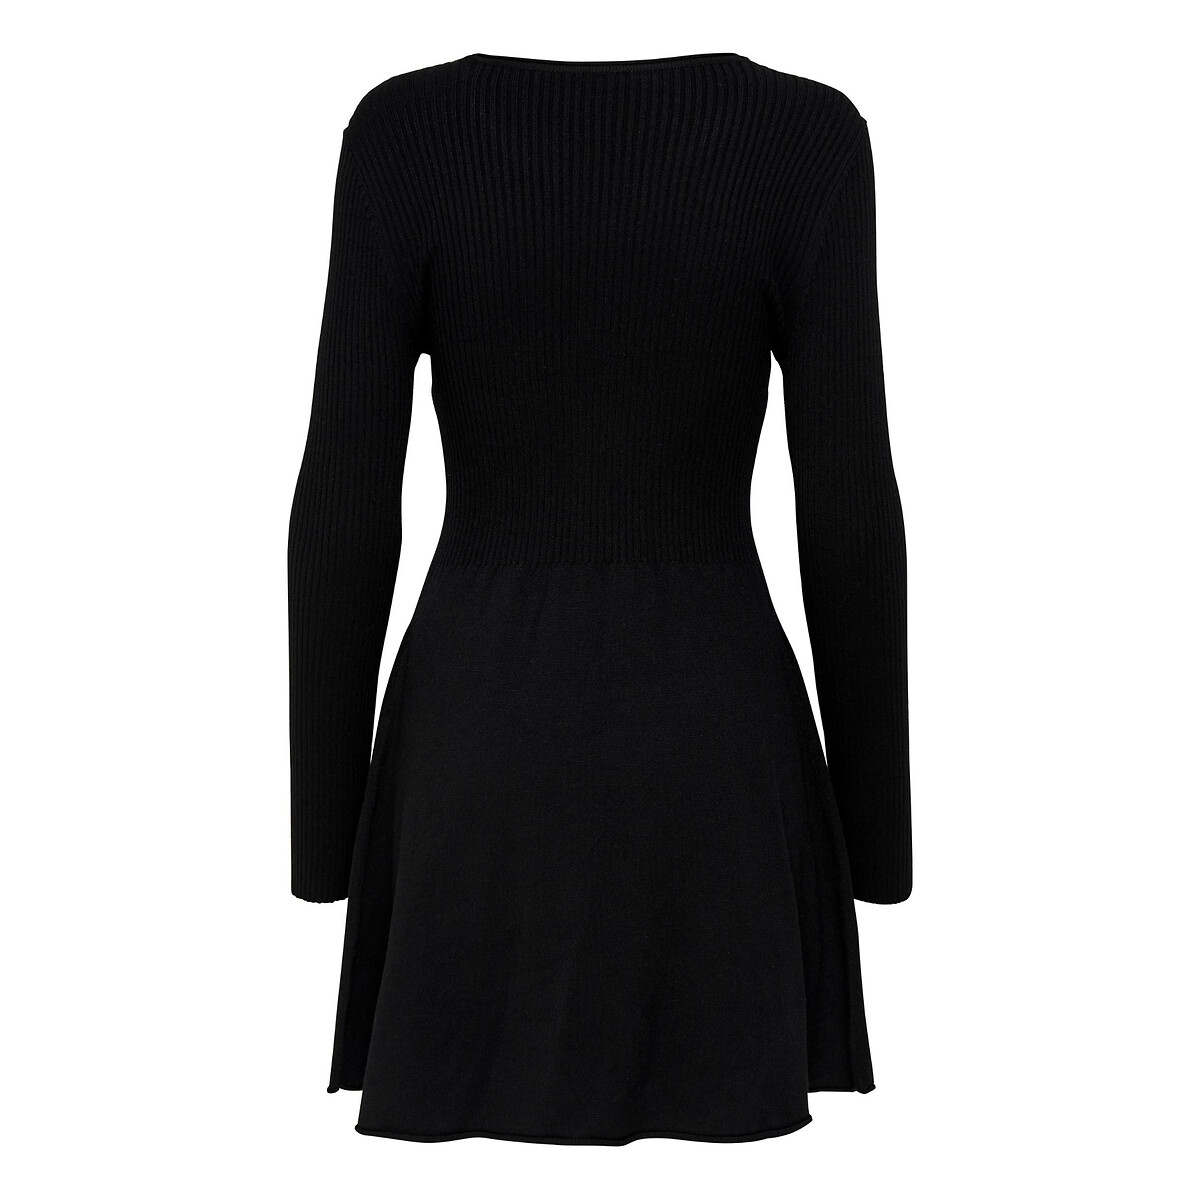 Платье короткое расклешенное с длинными рукавами M черный платье короткое расклешенное с длинными рукавами 40 черный